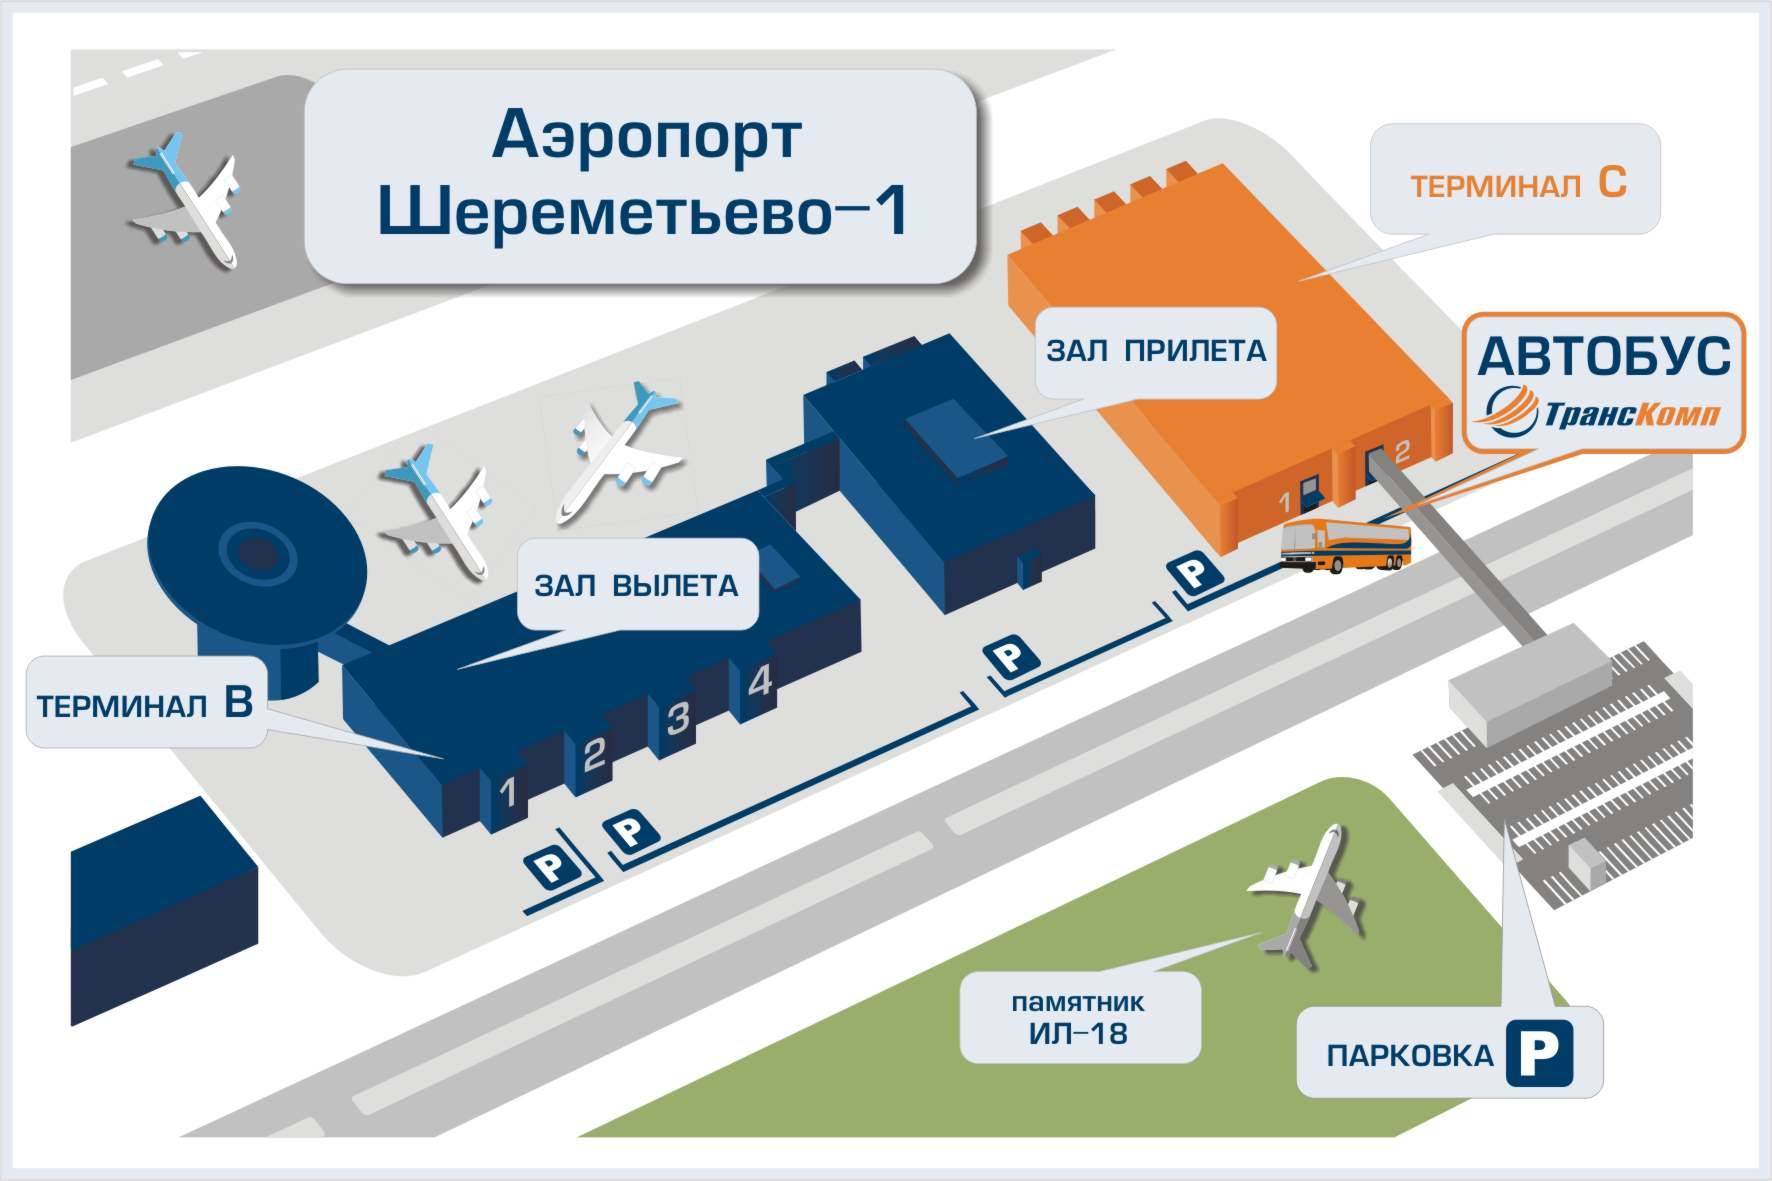 Аэропорт шереметьево терминал в вылет. Схема аэропорта Шереметьево с терминалами. Терминал в Шереметьево схема аэропорта терминал в. Аэропорт Шереметьево терминал b схема. Аэропорт Шереметьево расположение терминалов.